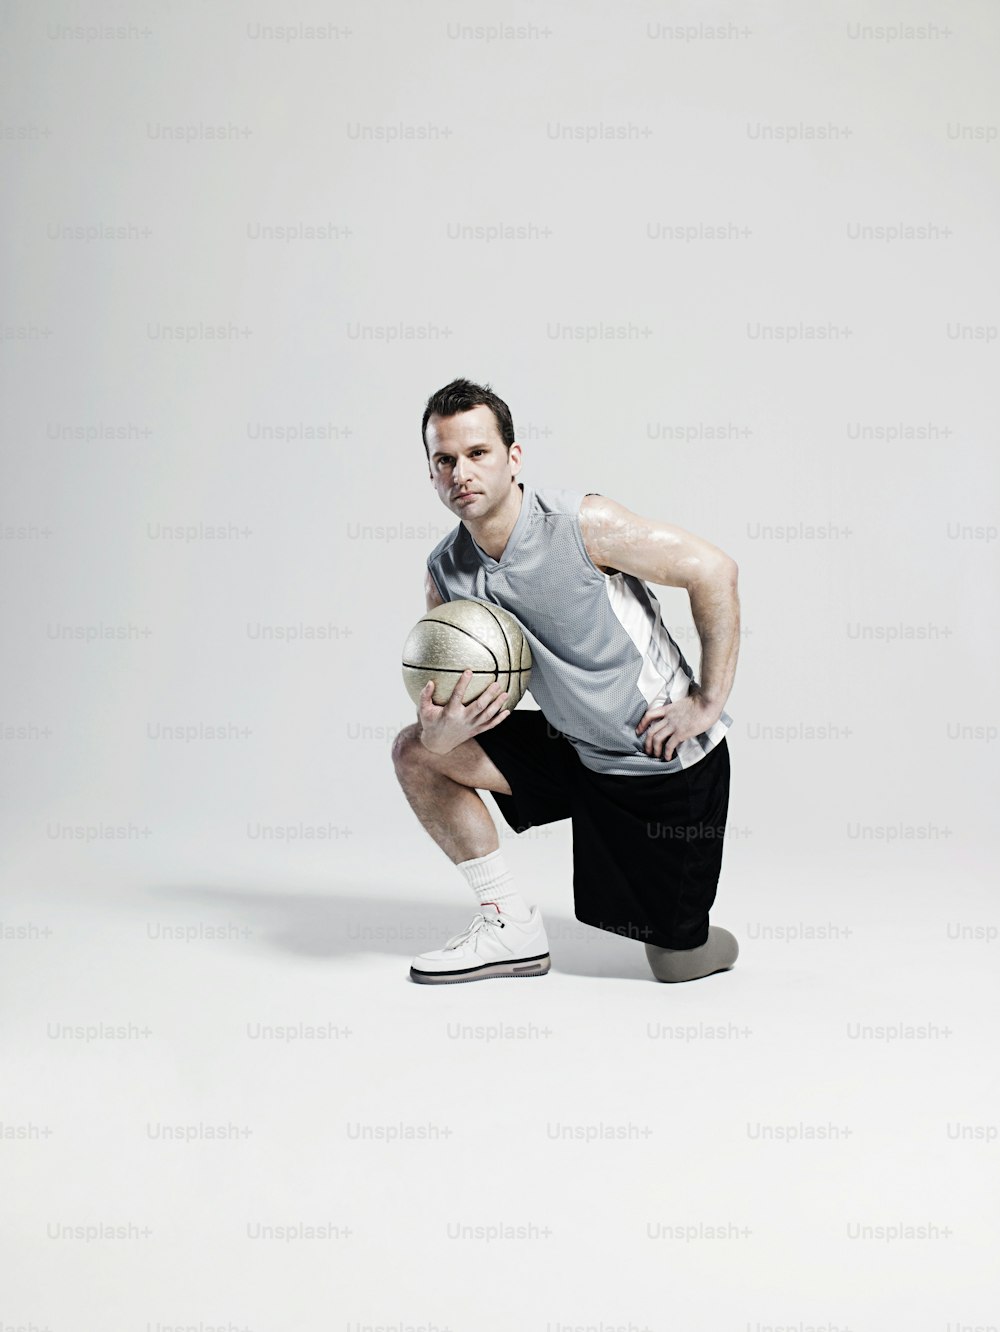 Un homme agenouillé tenant un ballon de basket